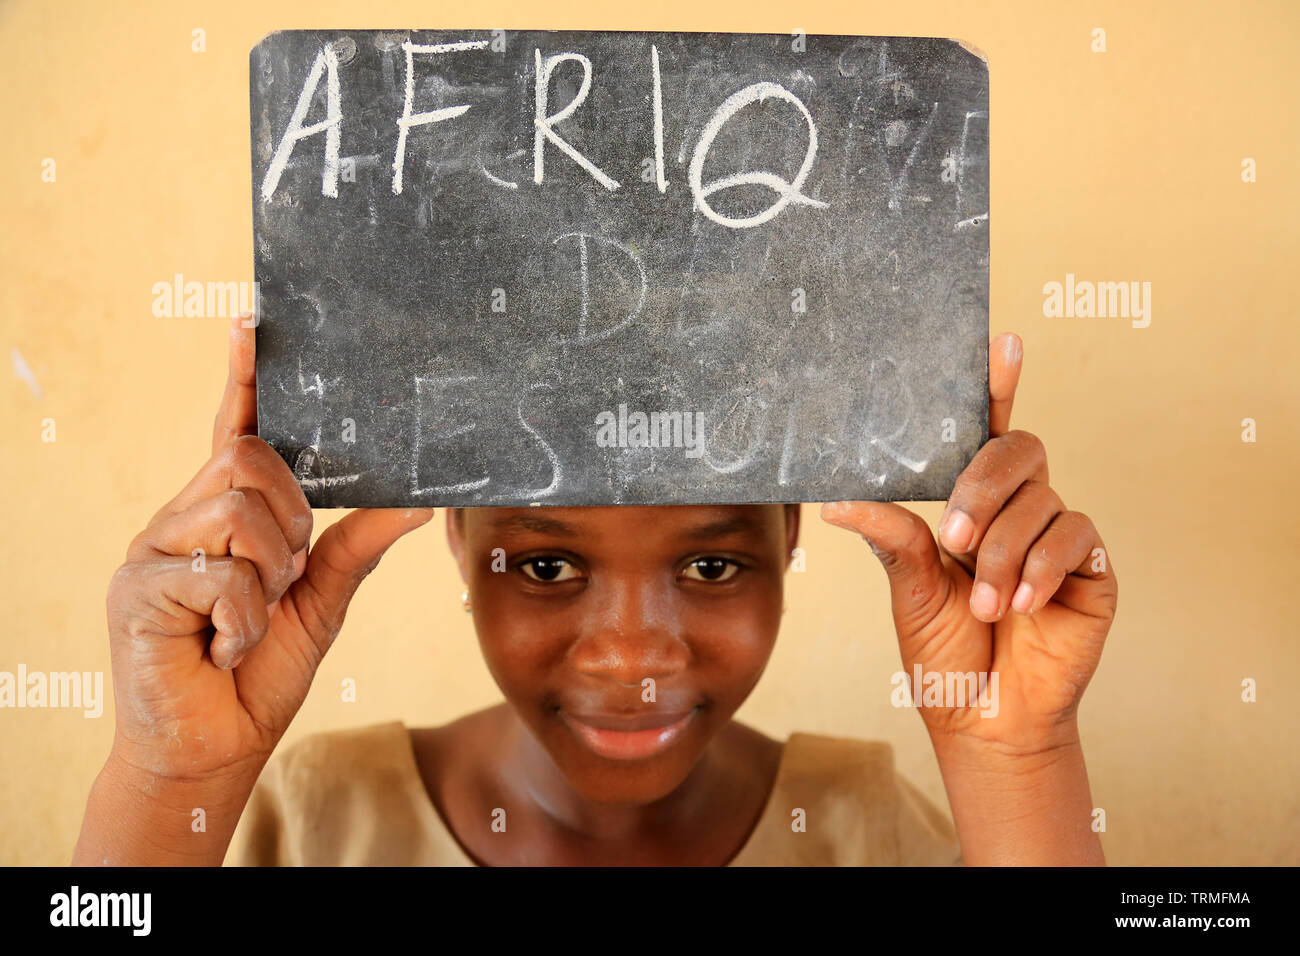 Iscrizione du mot Afrique sur une ardoise. Ecole primaire. La convenzione di Lomé. Il Togo. Afrique de l'Ouest. Foto Stock